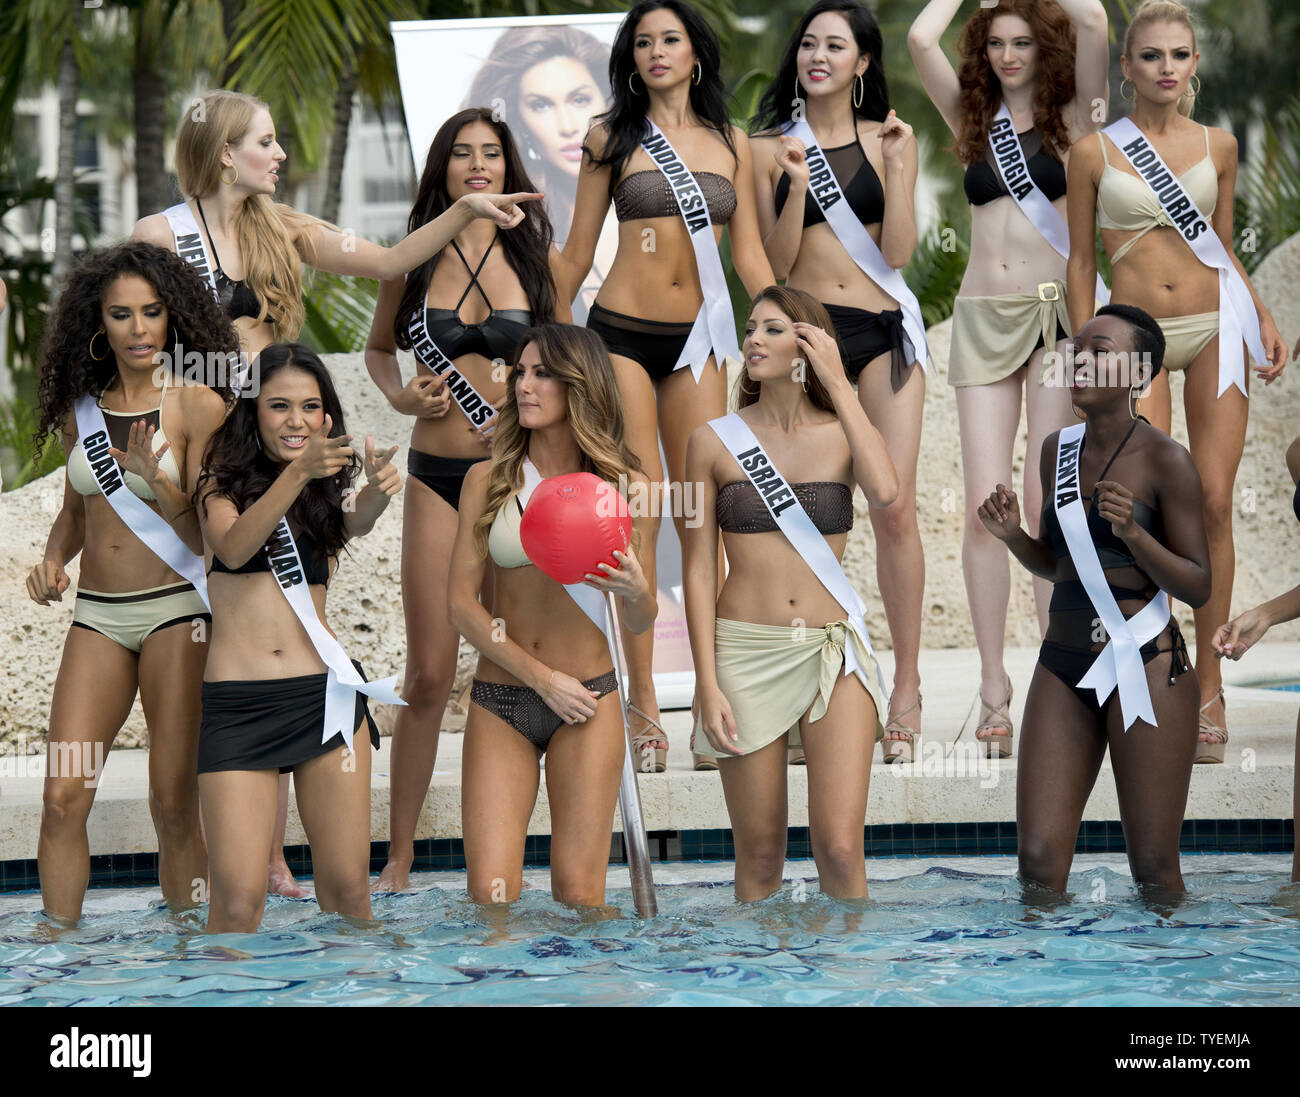 Miss Universe Teilnehmer versammeln sich um den Pool die Yamamay Badeanzug Badeanzug Sammlung während der Start- und Landebahn bei Trumpf nationale Doral Pool in Miami, Florida, am 14. Januar 2015 zu modellieren. Die 63 Rd. Miss Universe wird in Miami, Florida, 25. Januar 2015 statt. Foto von Gary ich Rothstein/UPI Stockfoto